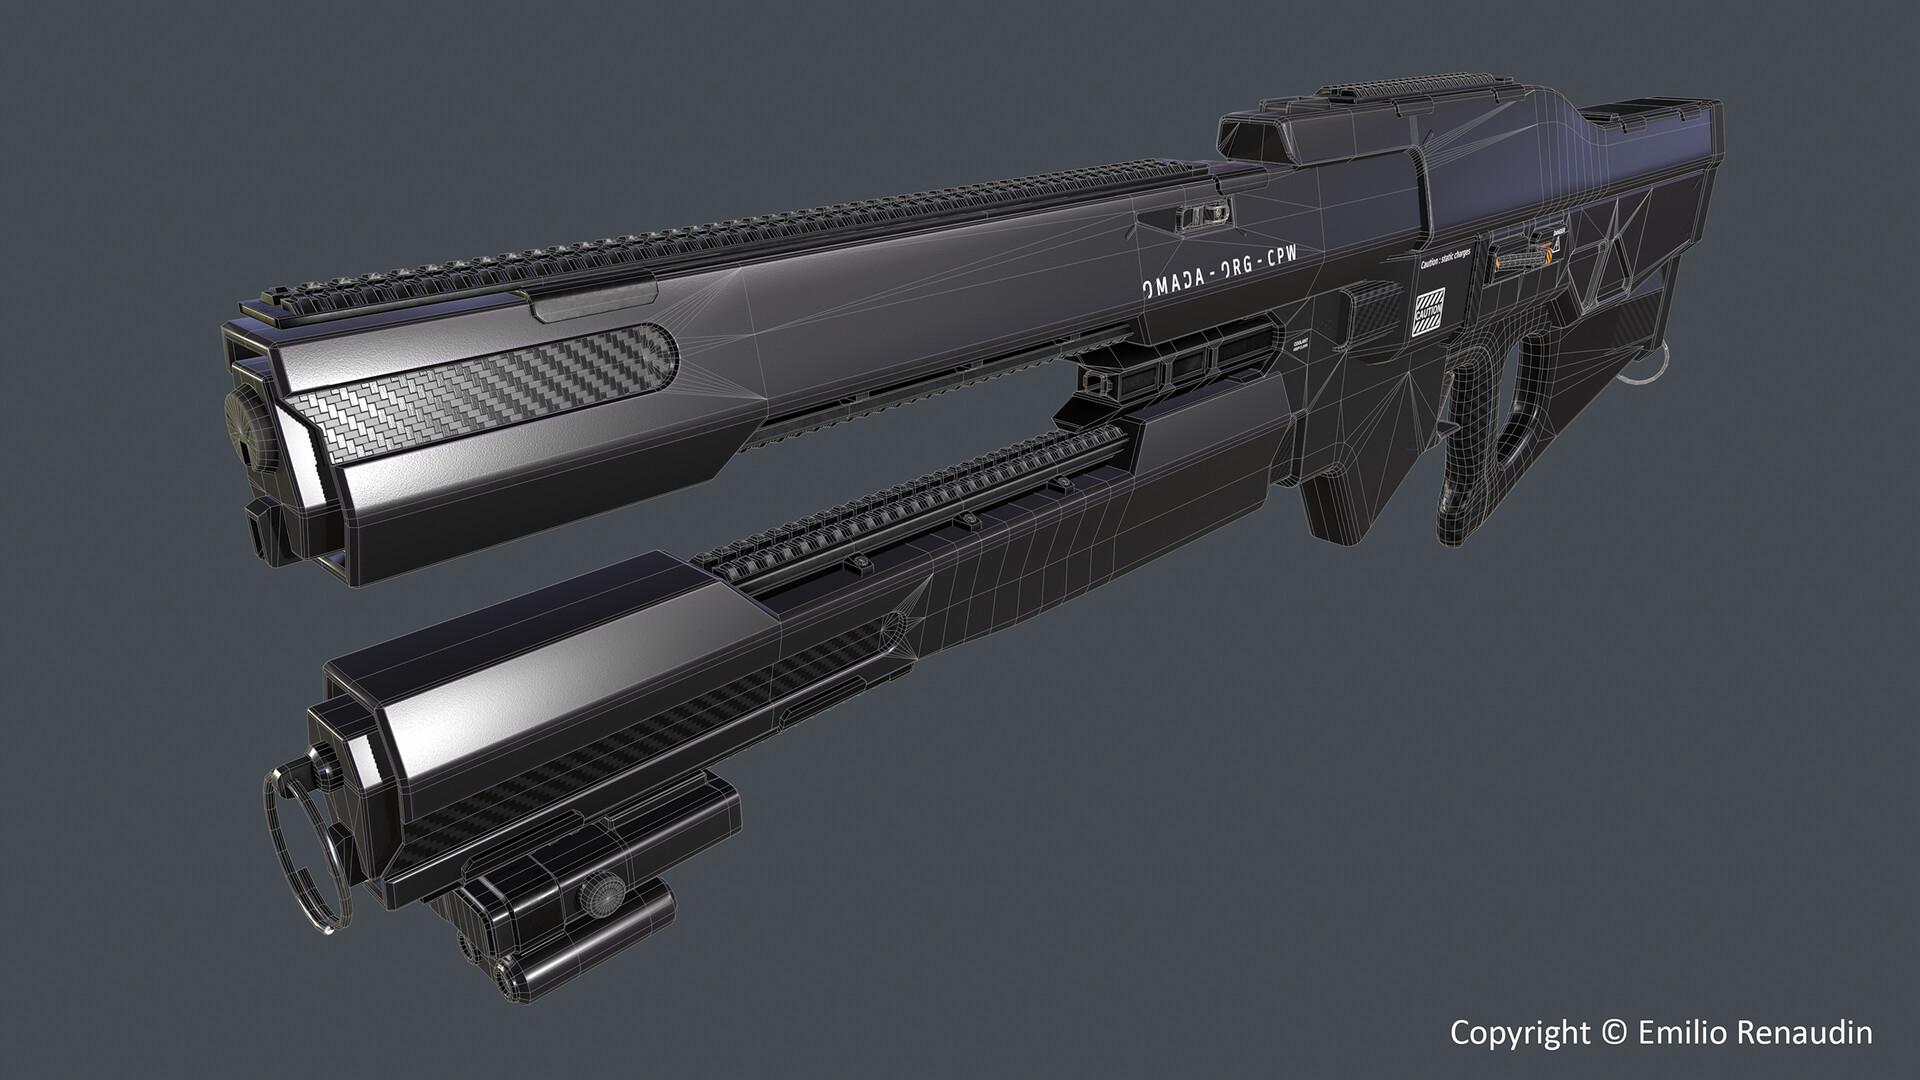 ArtStation - Ally Pfeilstorch Railgun launcher